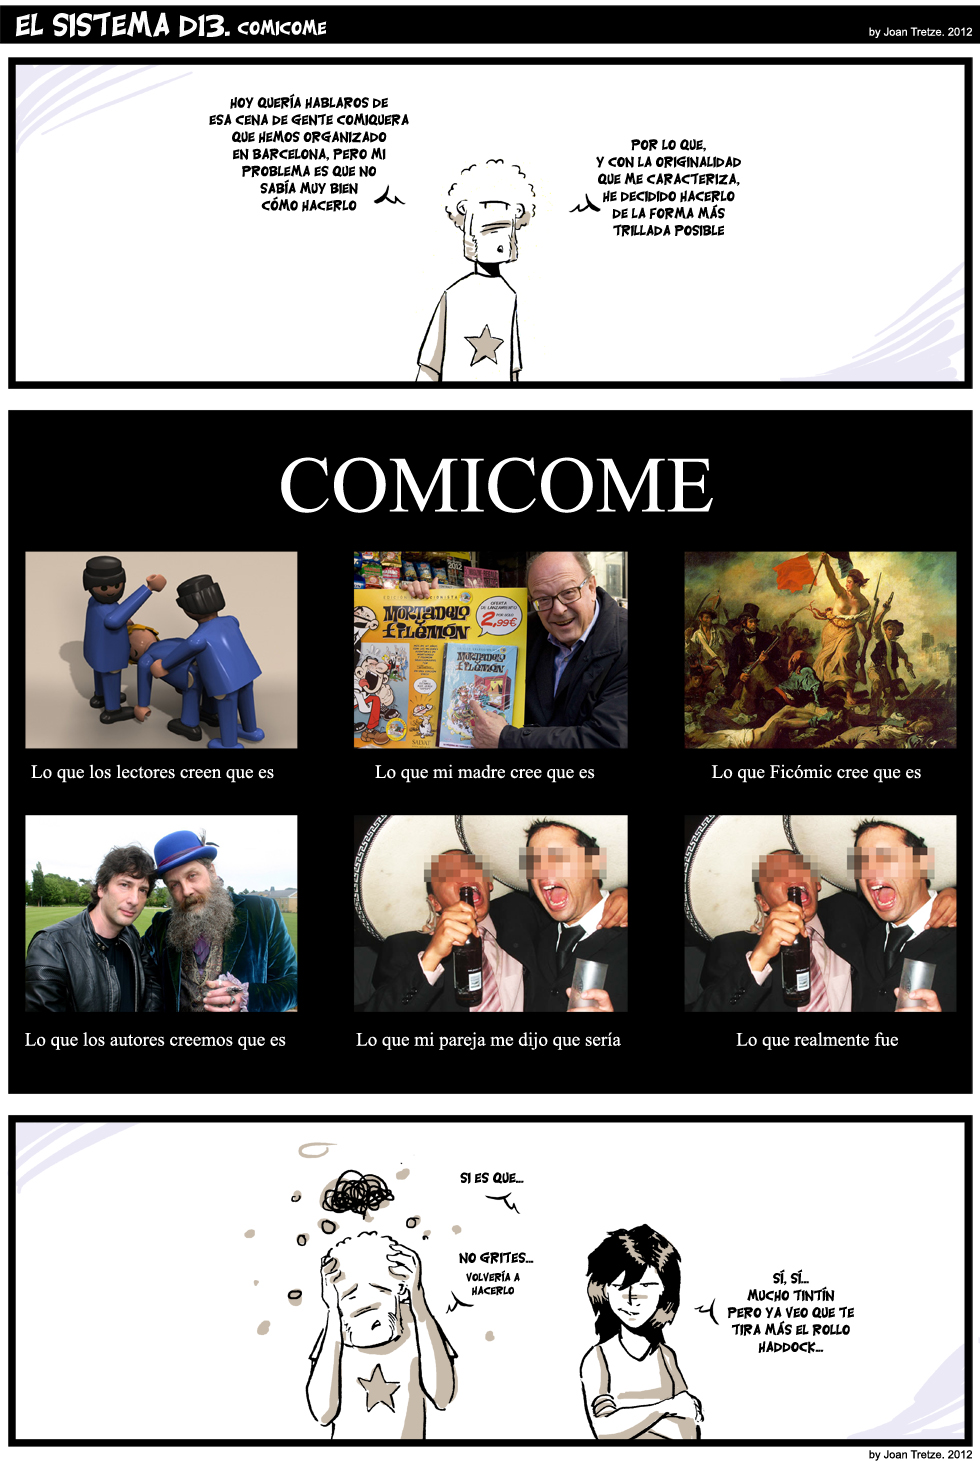 441. Comicome